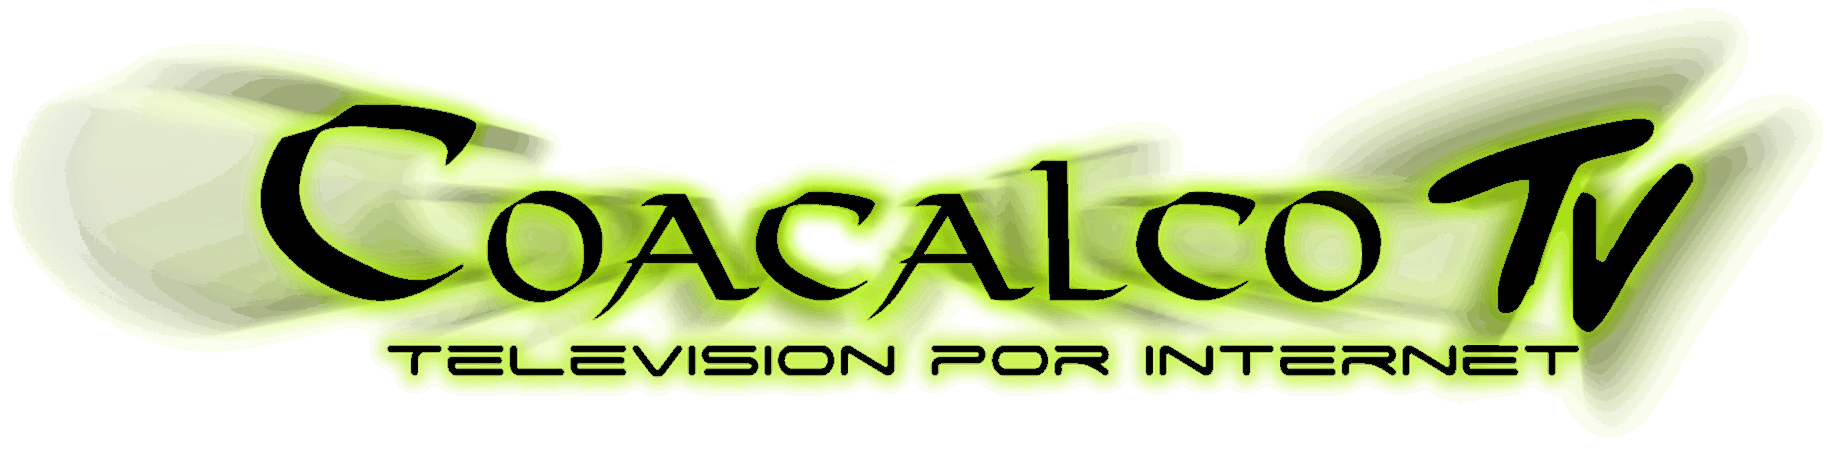 Coacalco TV  | Sistema De TV Digital del Estado de México para el mundo